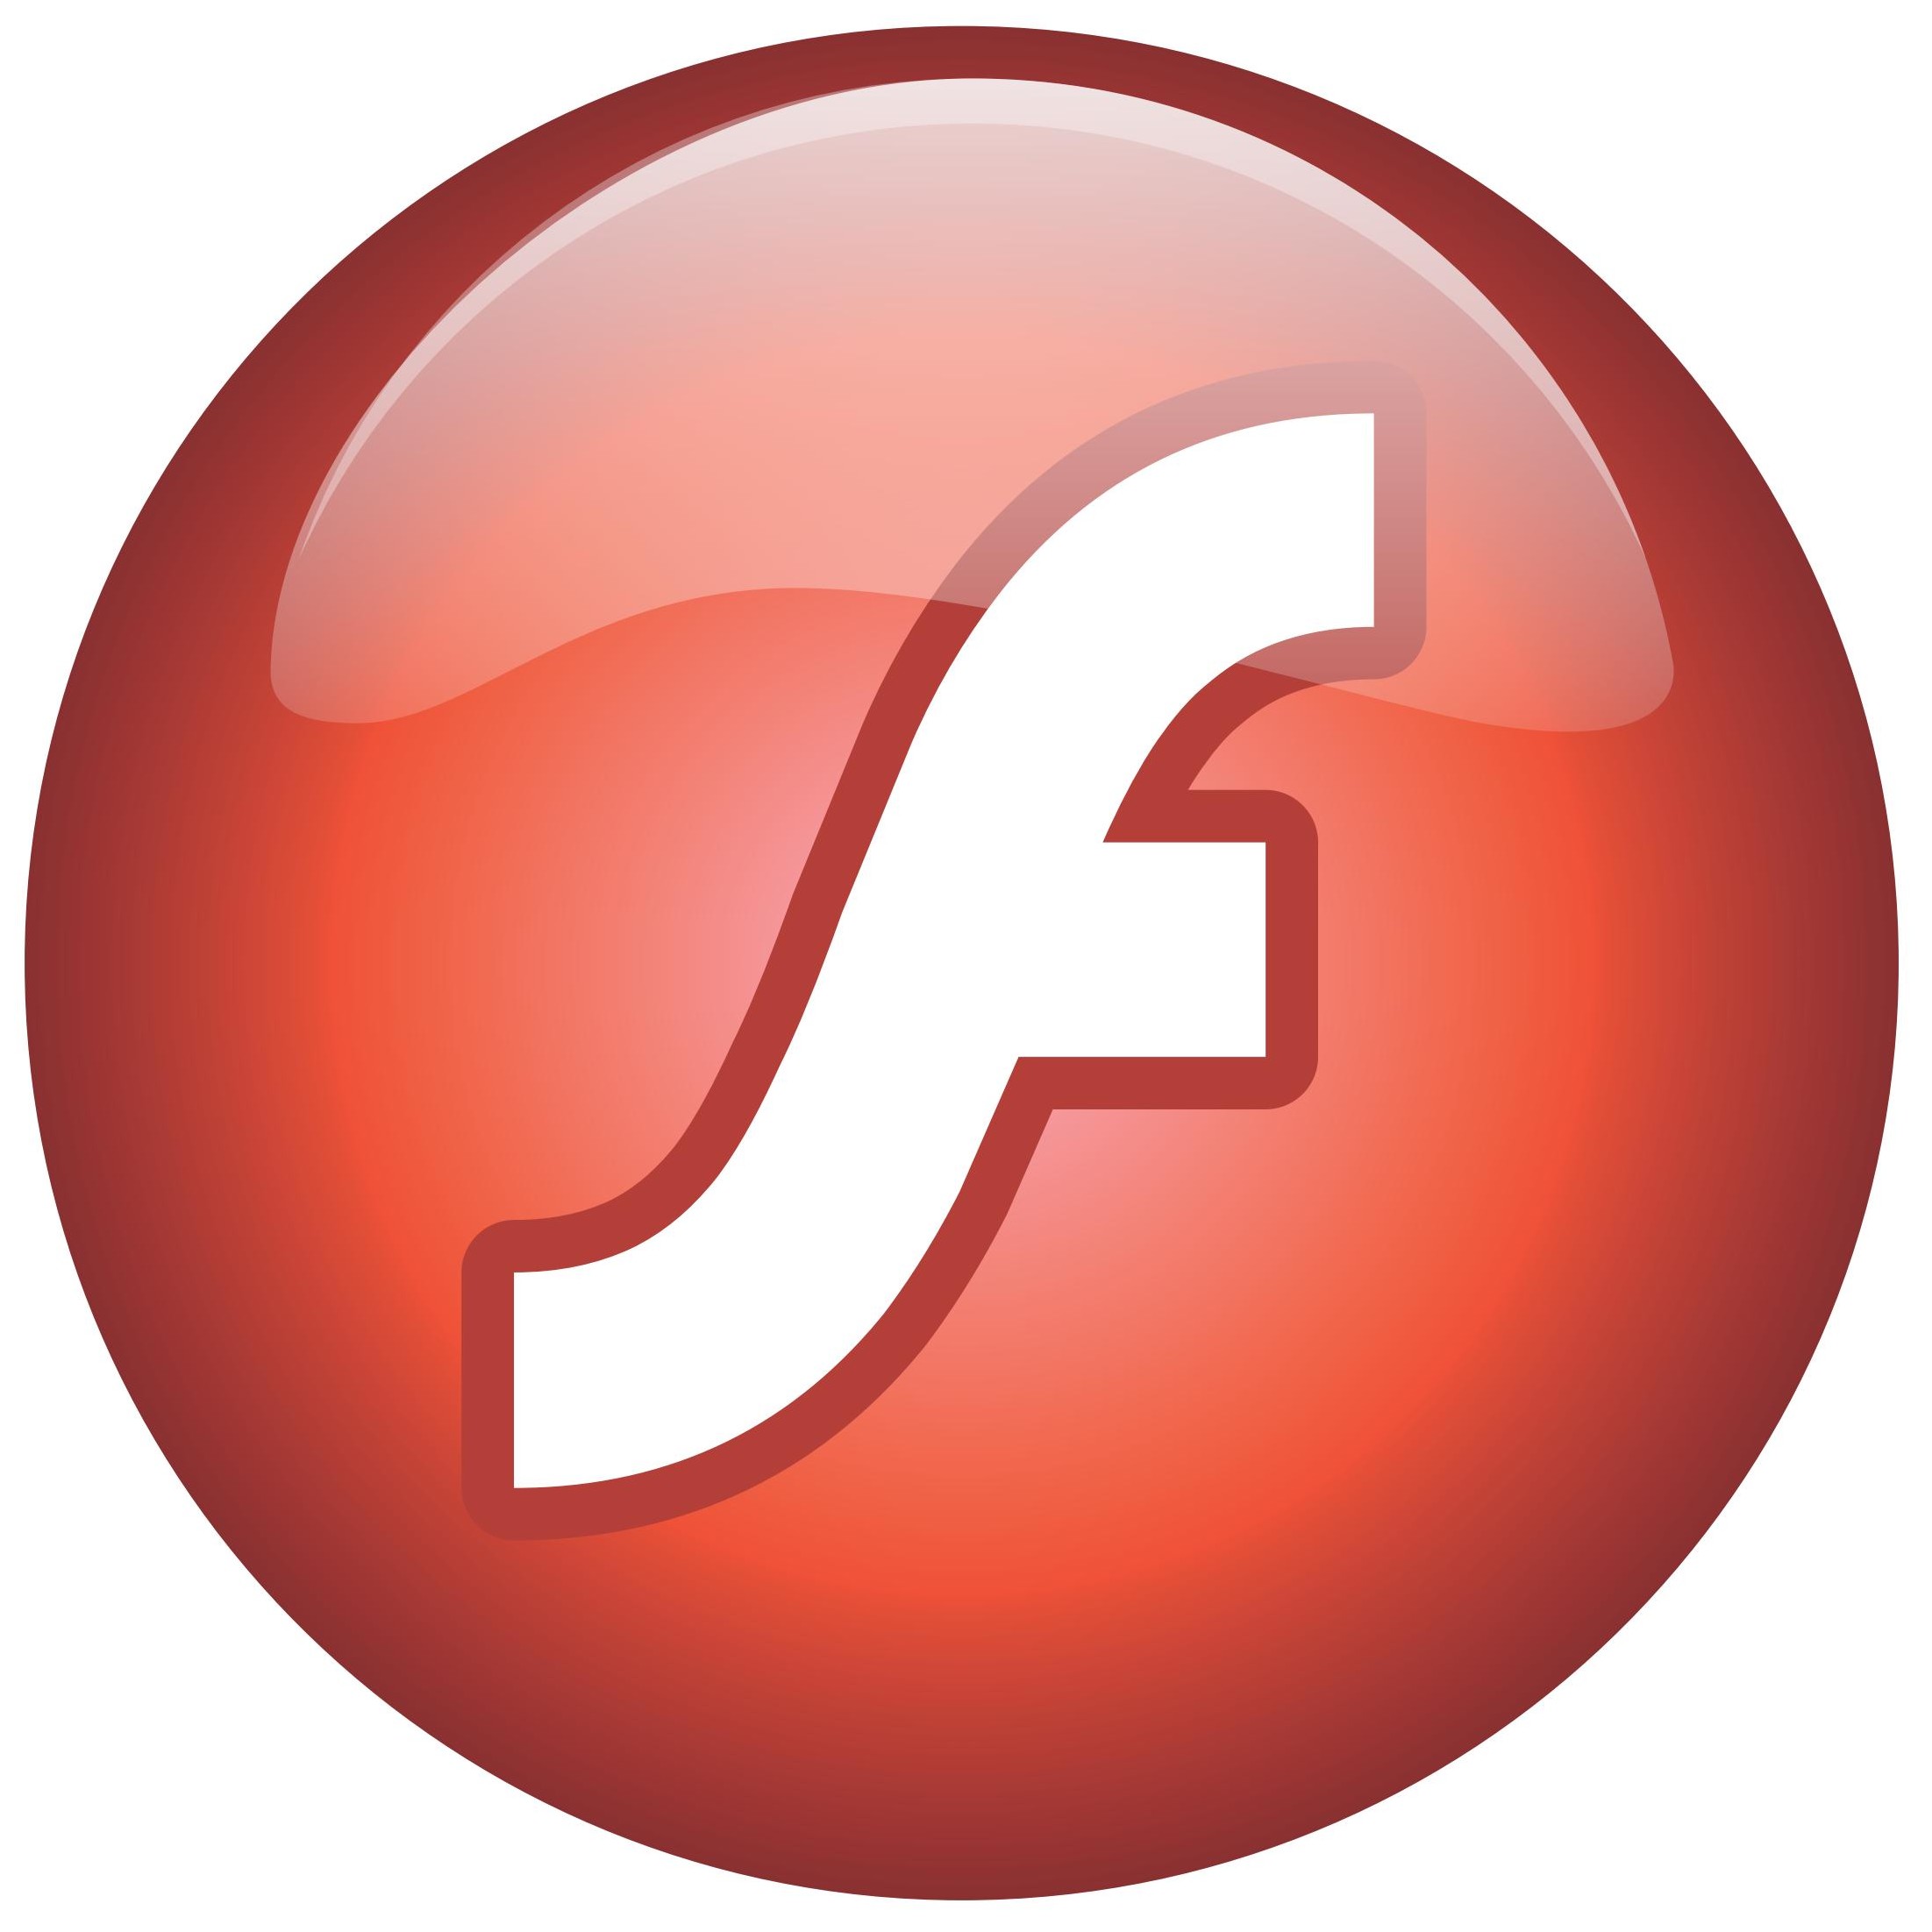 Download free Adobe Flash Pro